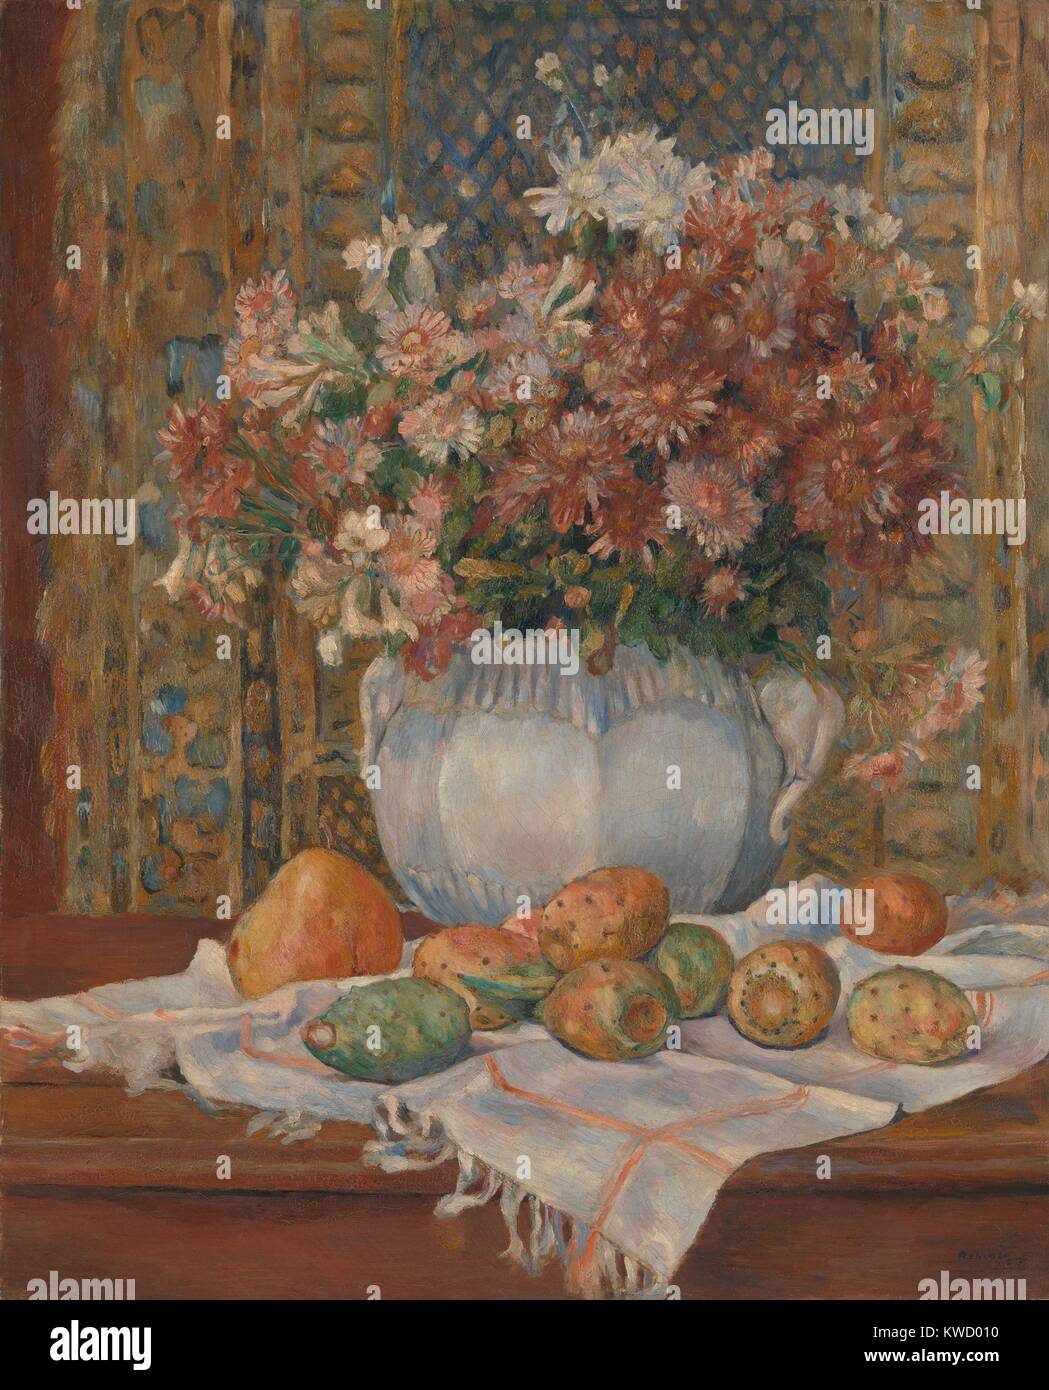 Stillleben mit Blumen und Feigenkakteen, von Auguste Renoir, 1885, französischer impressionistischer Malerei. Renoir diese lackiert mit gedeckten Farben und subtile tonale Kontraste (BSLOC 2017 3 86) Stockfoto